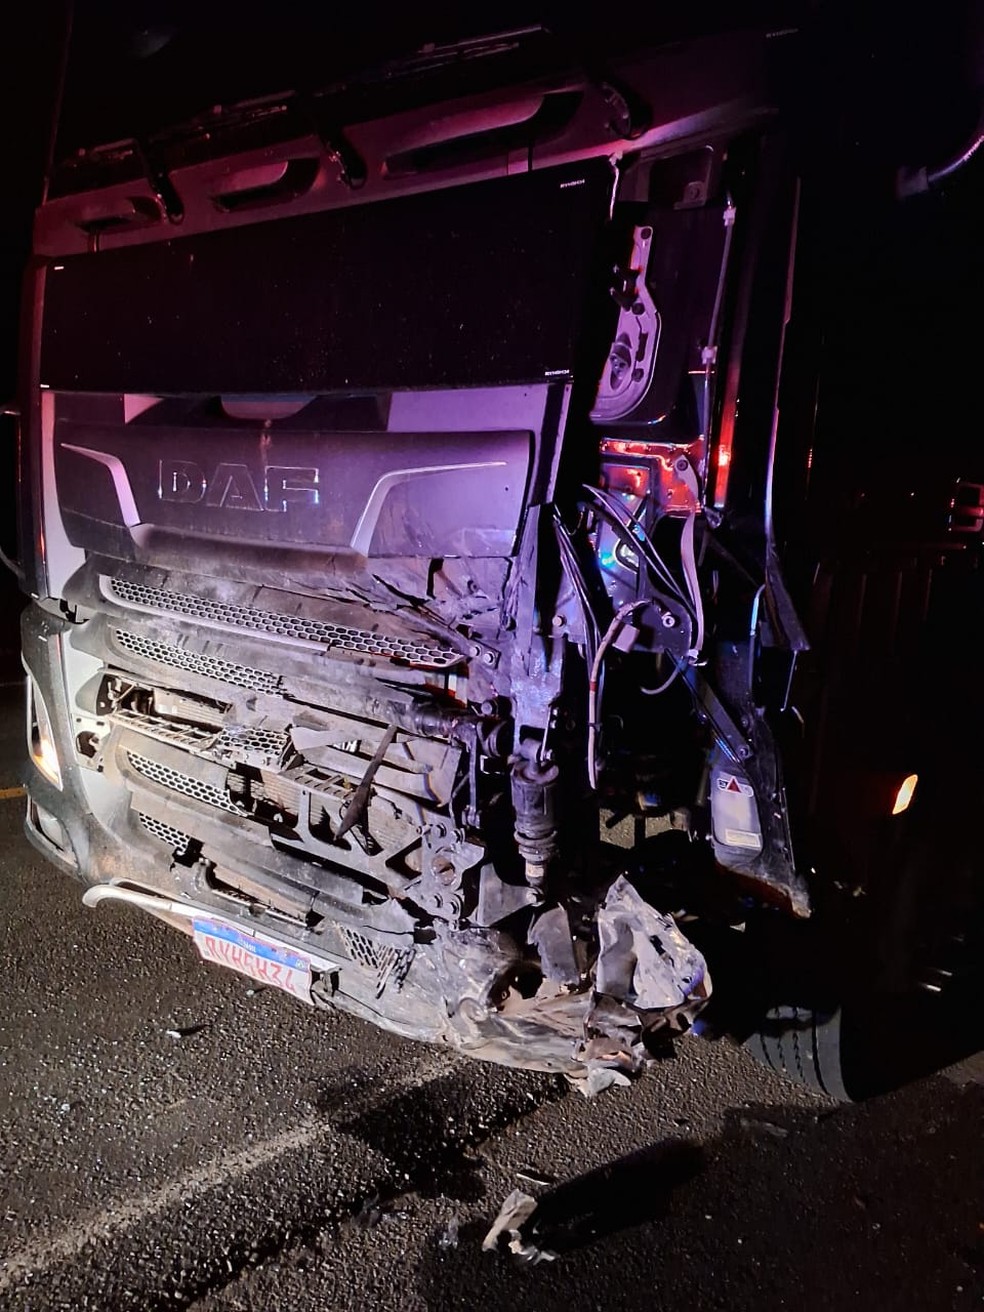 Motorista morre após batida frontal entre caminhão e carro, em São Mateus do Sul — Foto: Corpo de Bombeiros